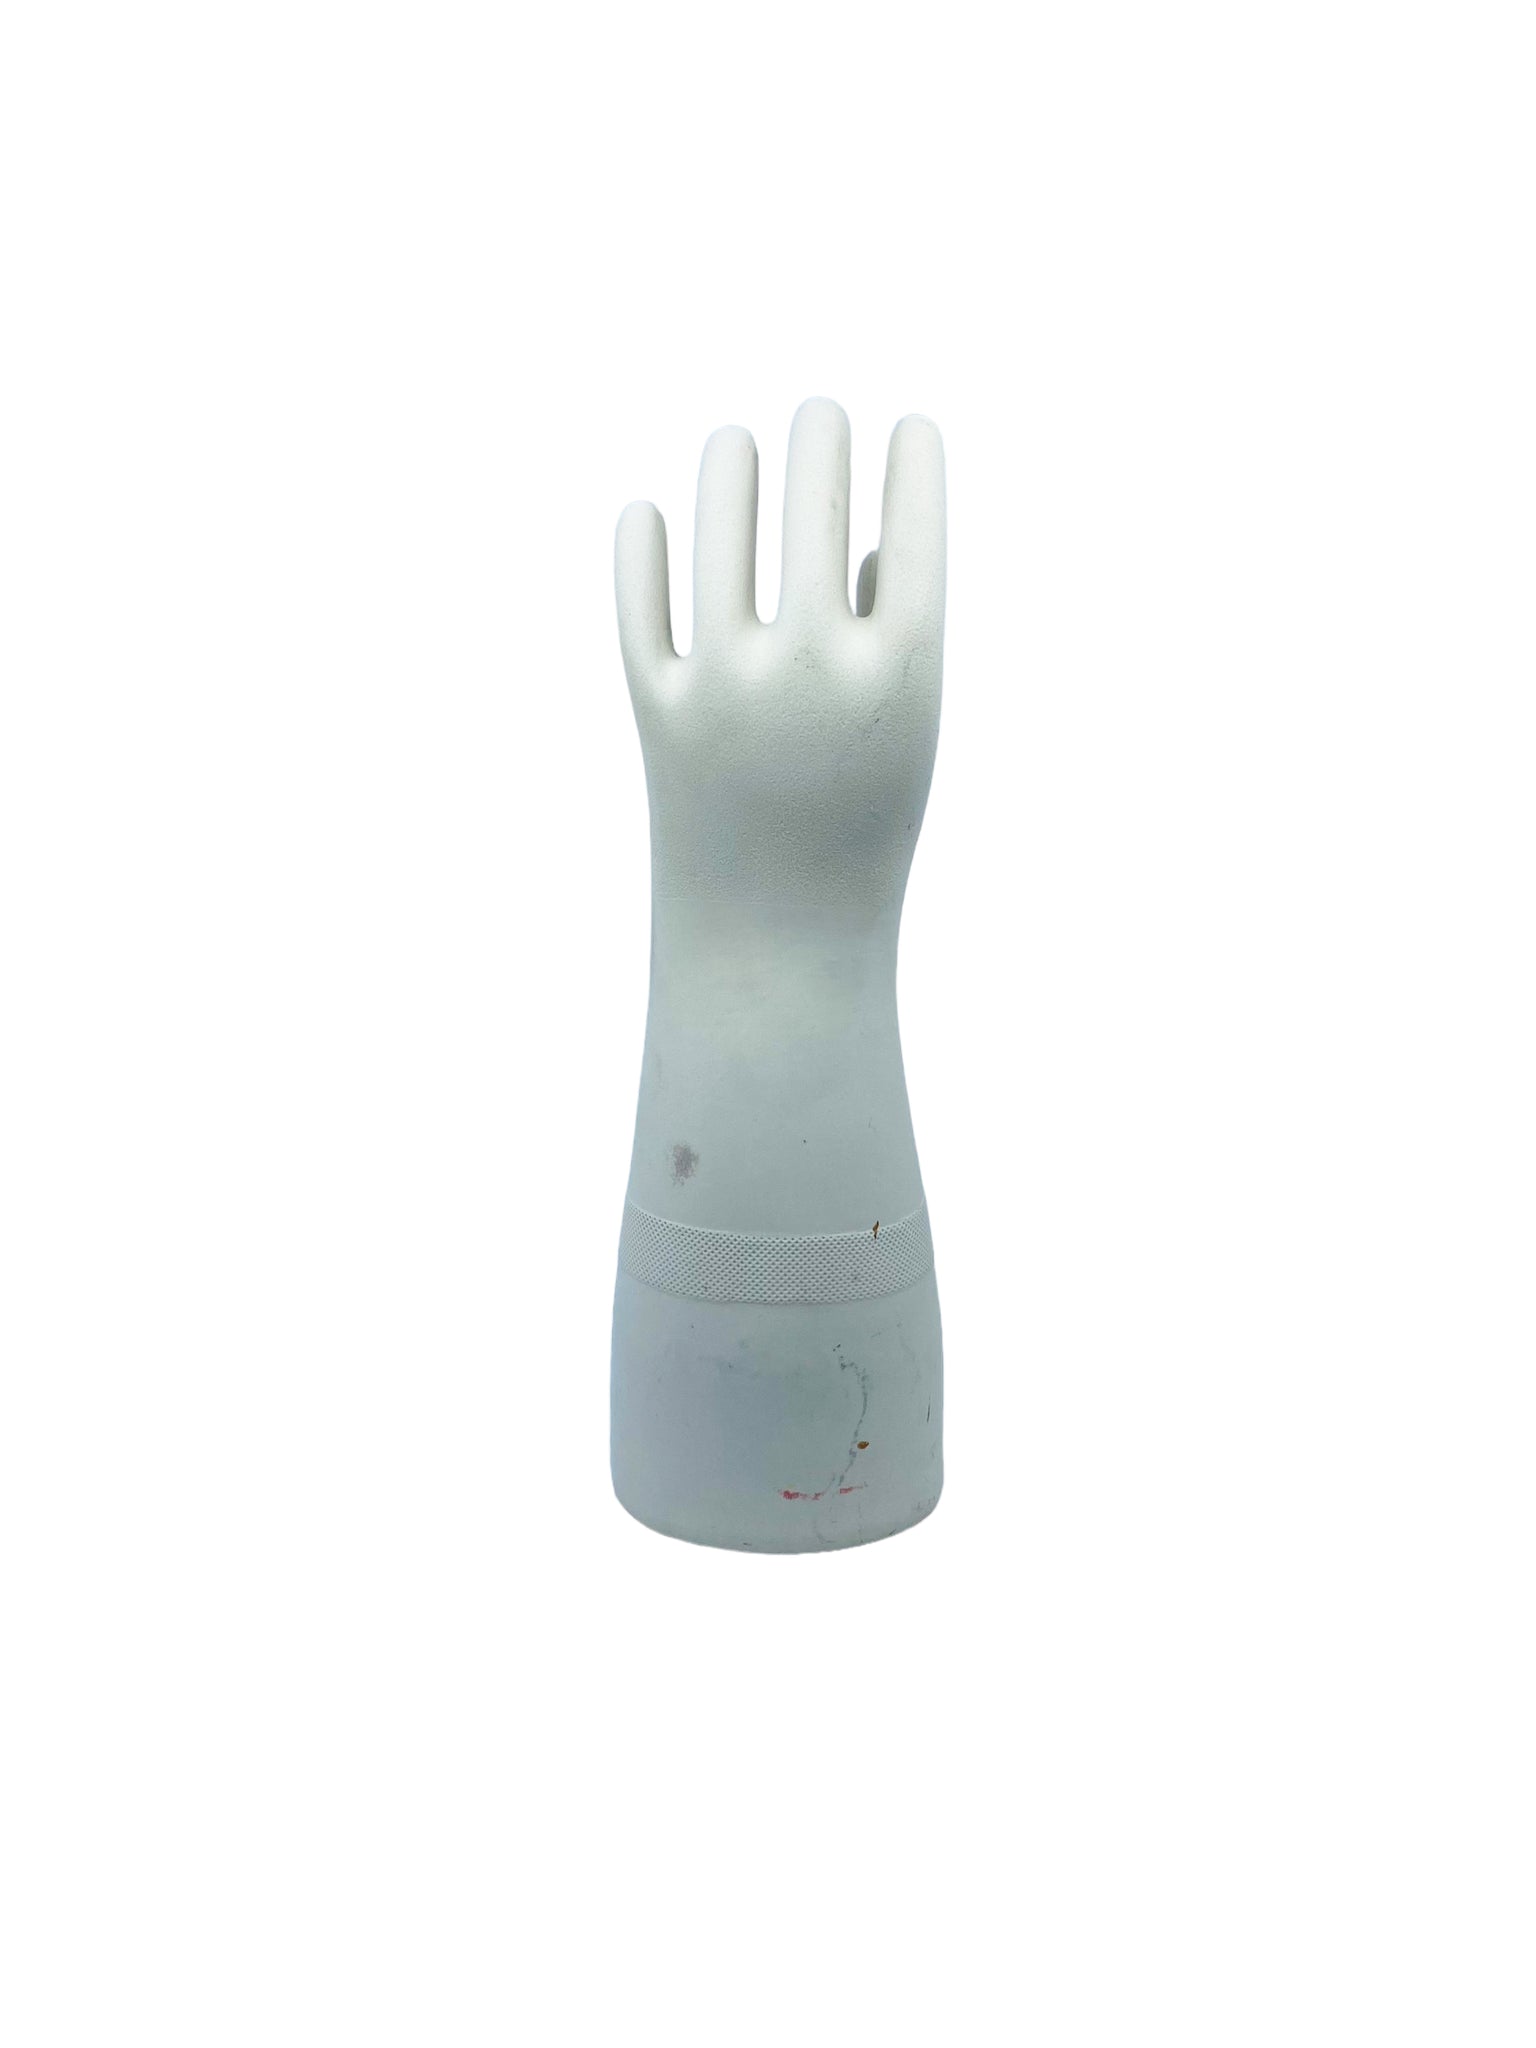 Vintage Porcelain Large Rubber Glove Mold, Size 10